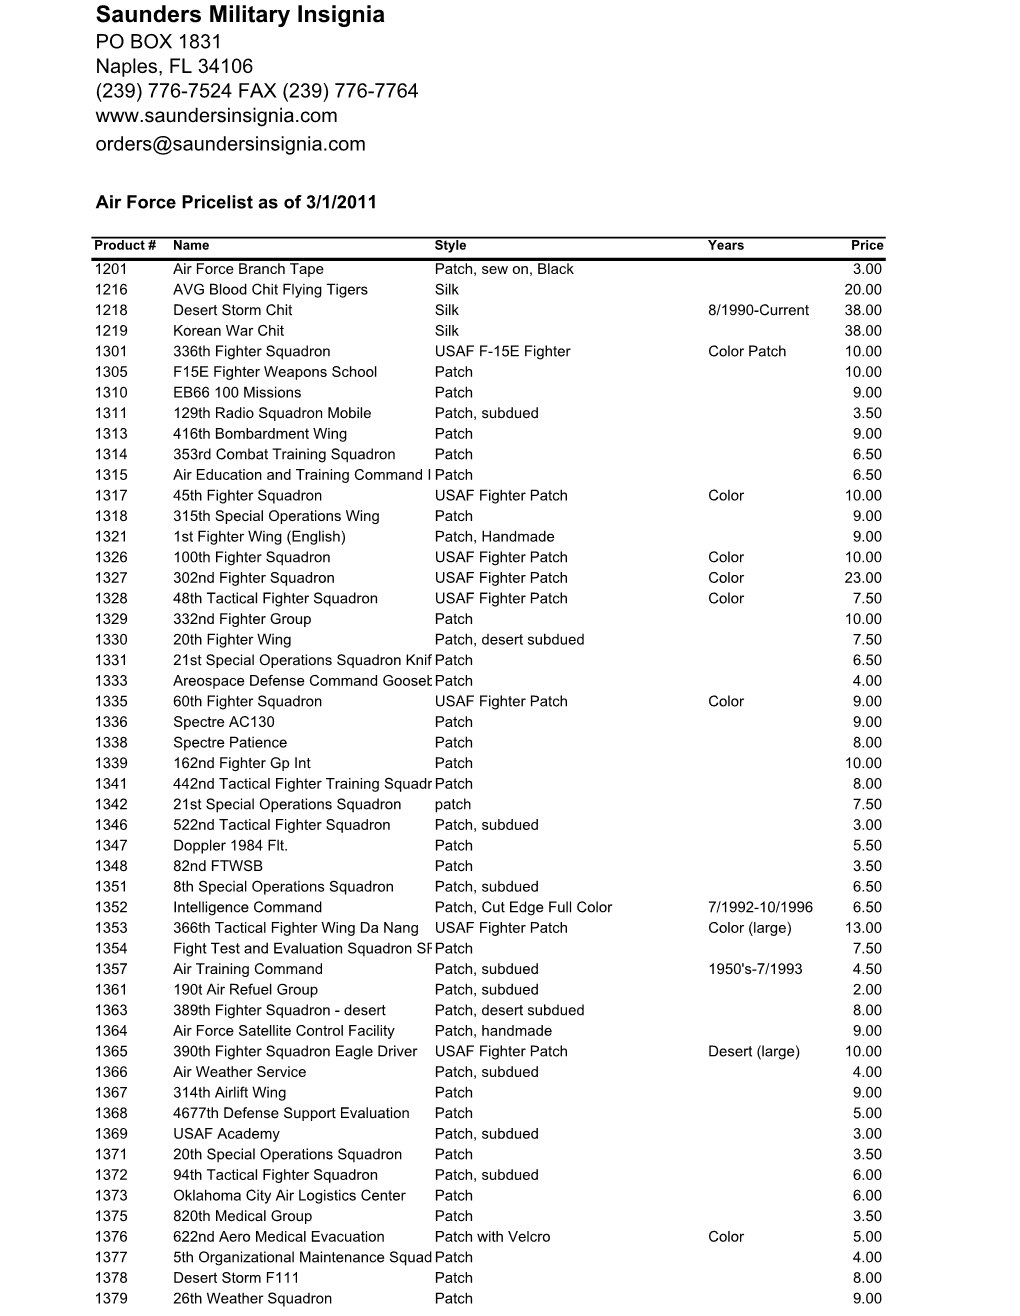 Air Force Pricelist As of 3/1/2011